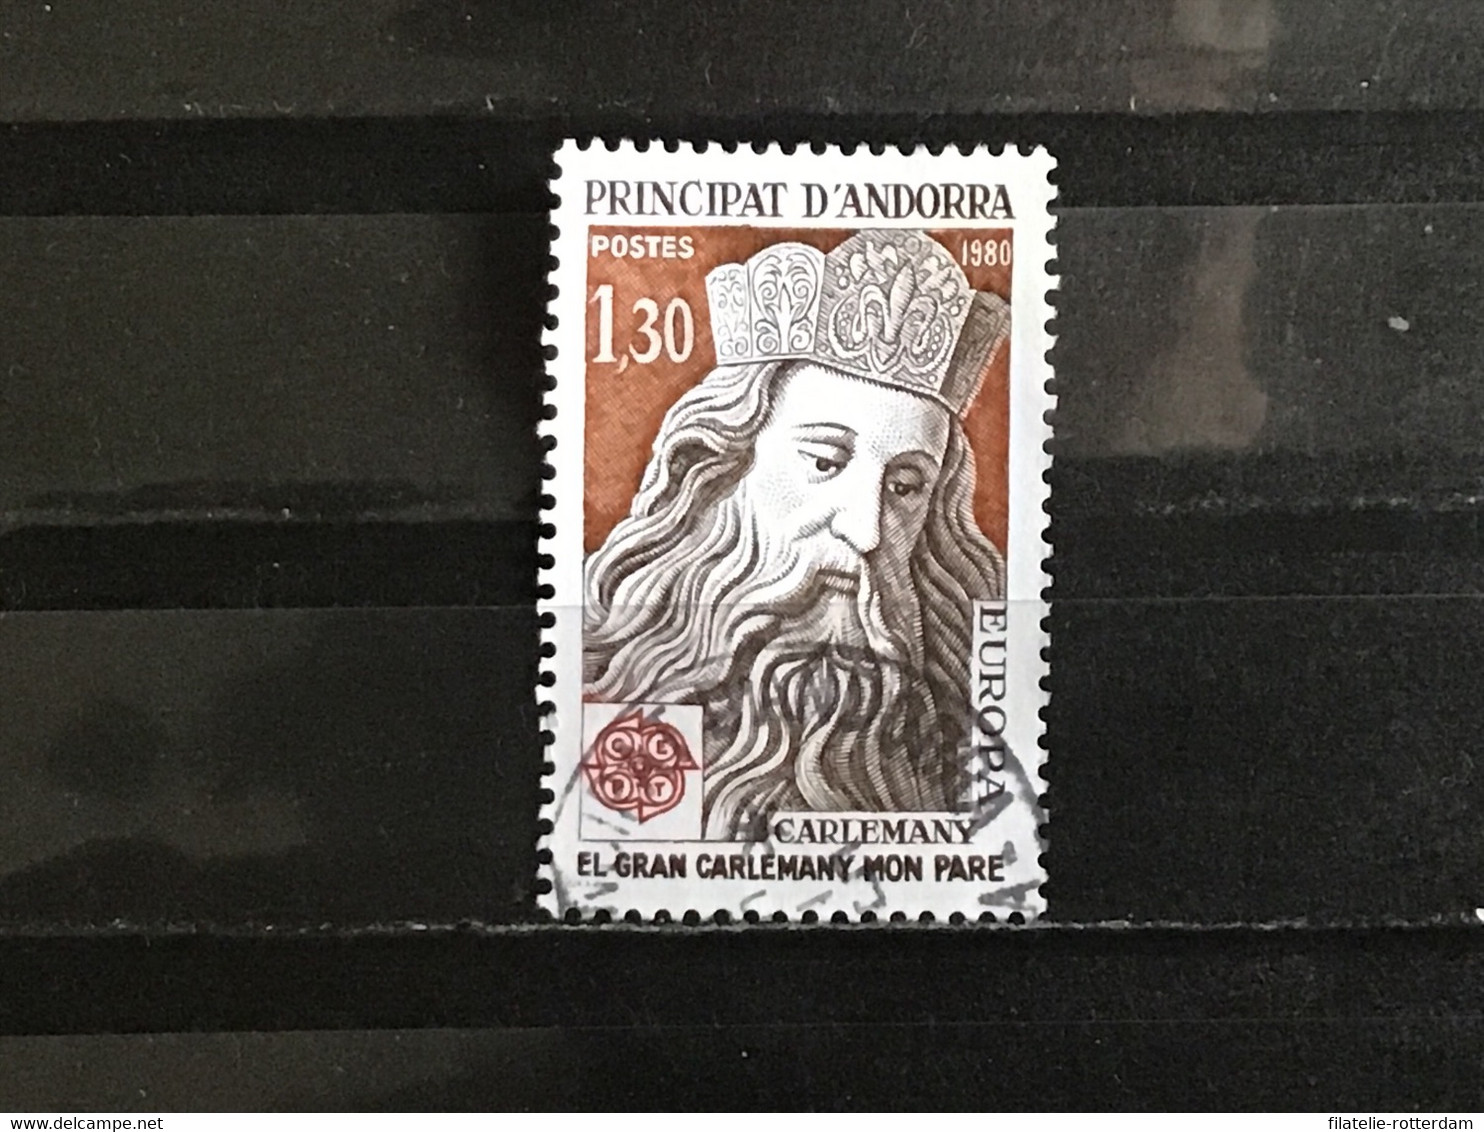 Andorra - Europa, Beroemdheden (1.30) 1980 - Used Stamps